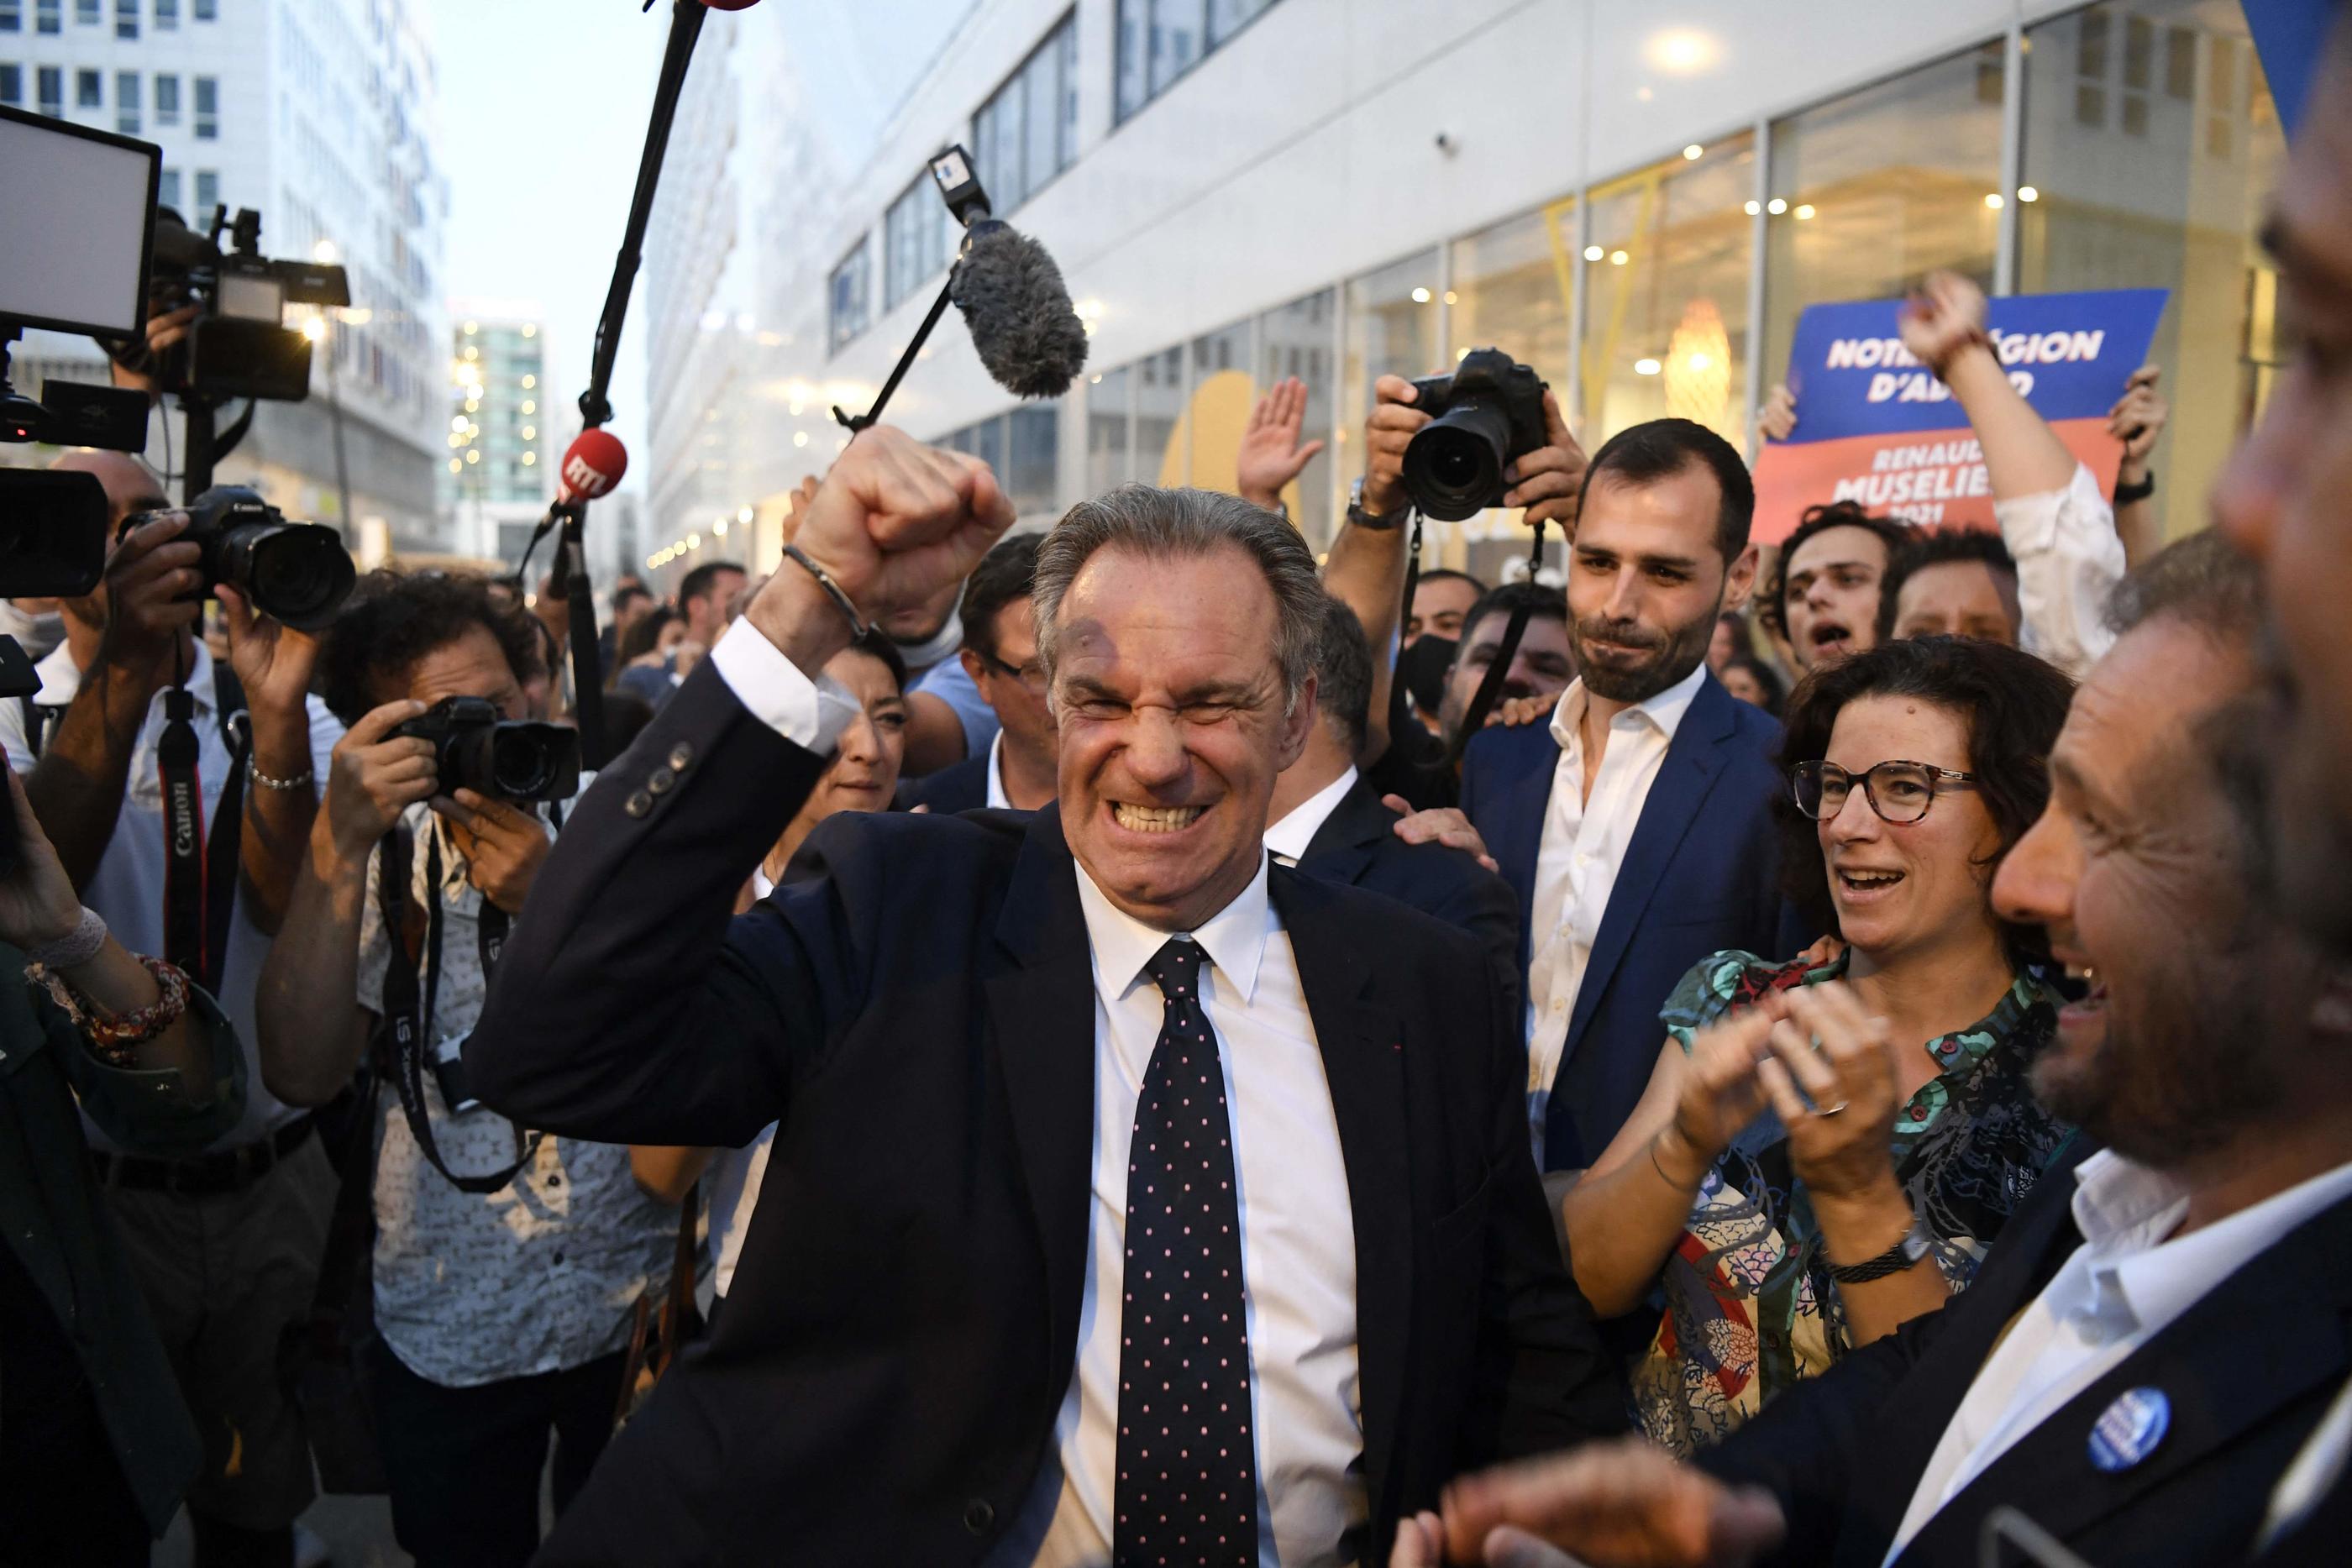 Le président de la région Provence-Alpes-Cote d'Azur, Renaud Muselier, a été confortablement réélu. AFP/NICOLAS TUCAT